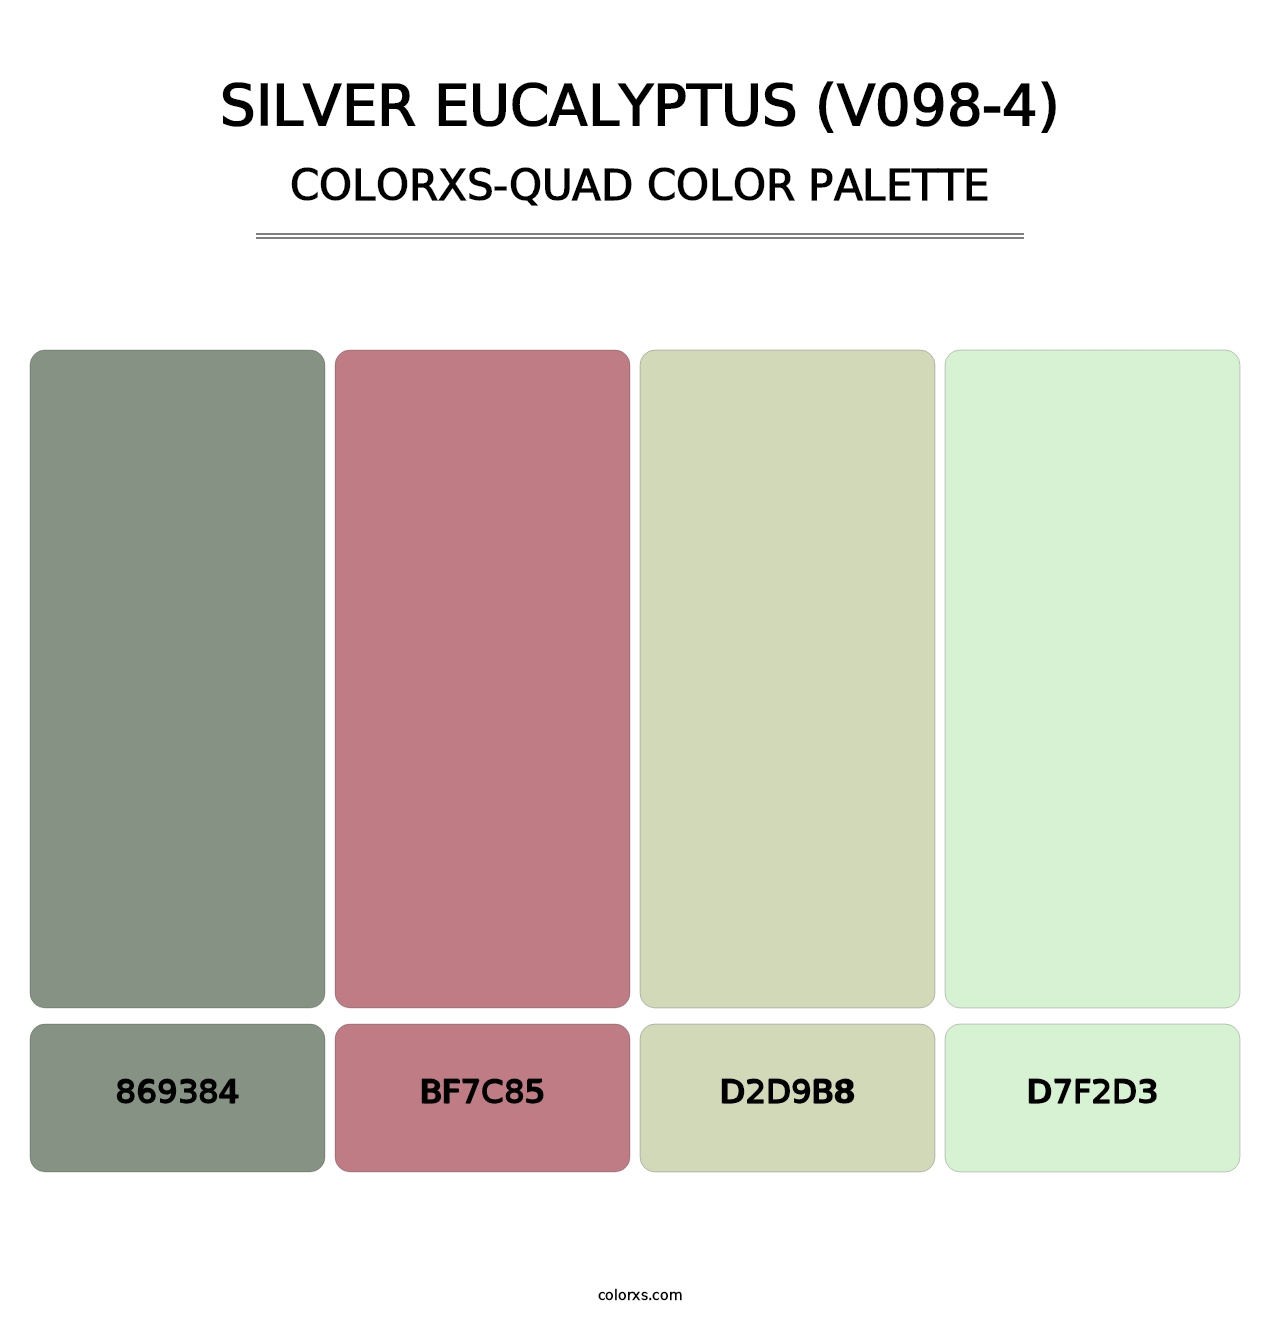 Silver Eucalyptus (V098-4) - Colorxs Quad Palette